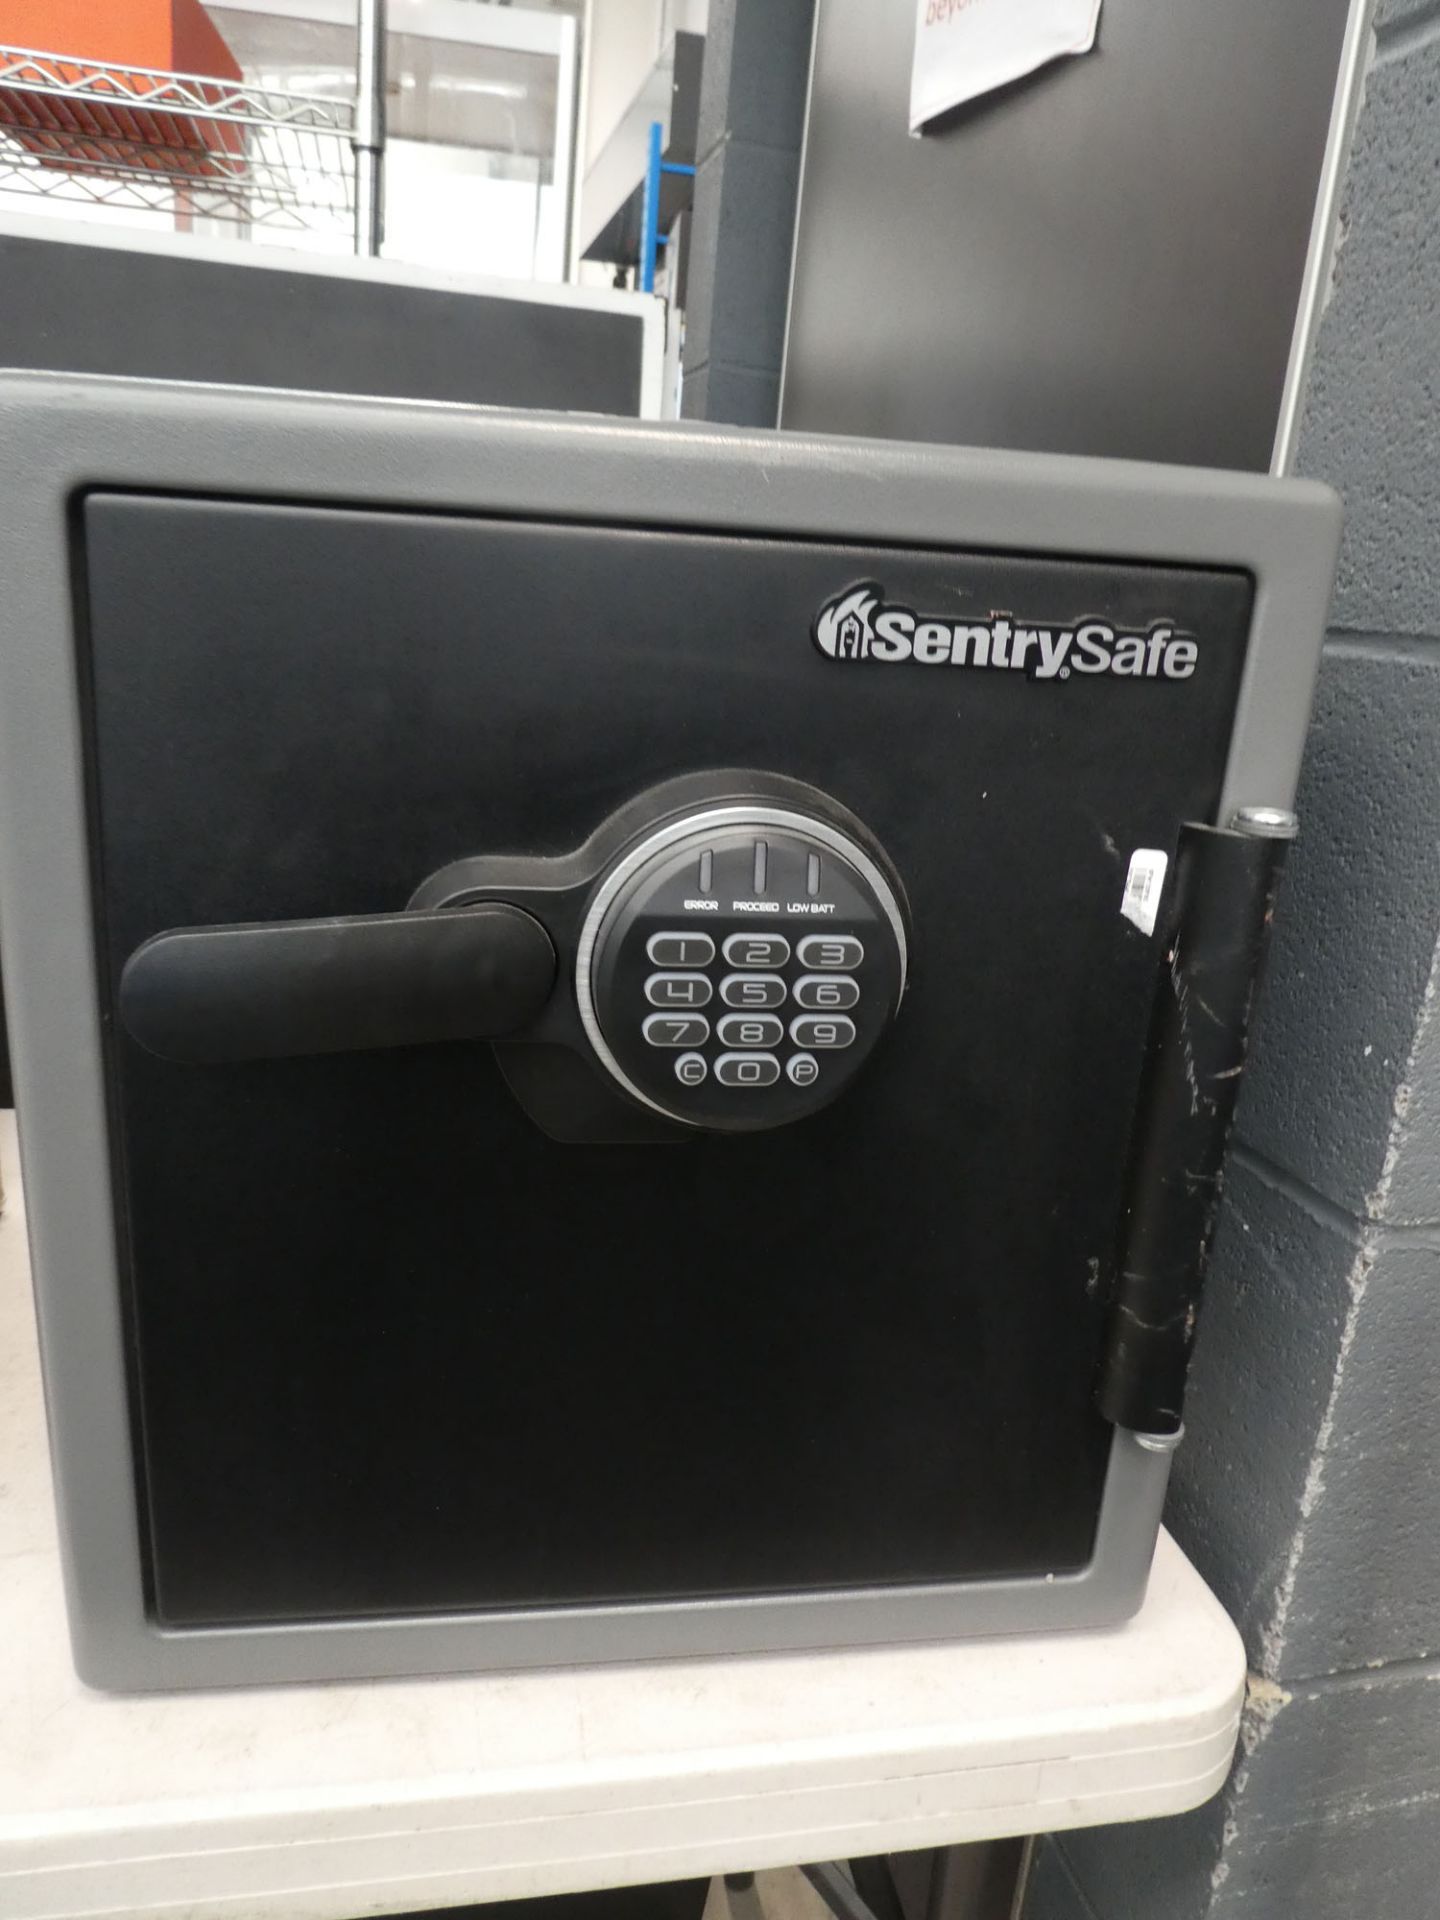 Sentry safe (locked)